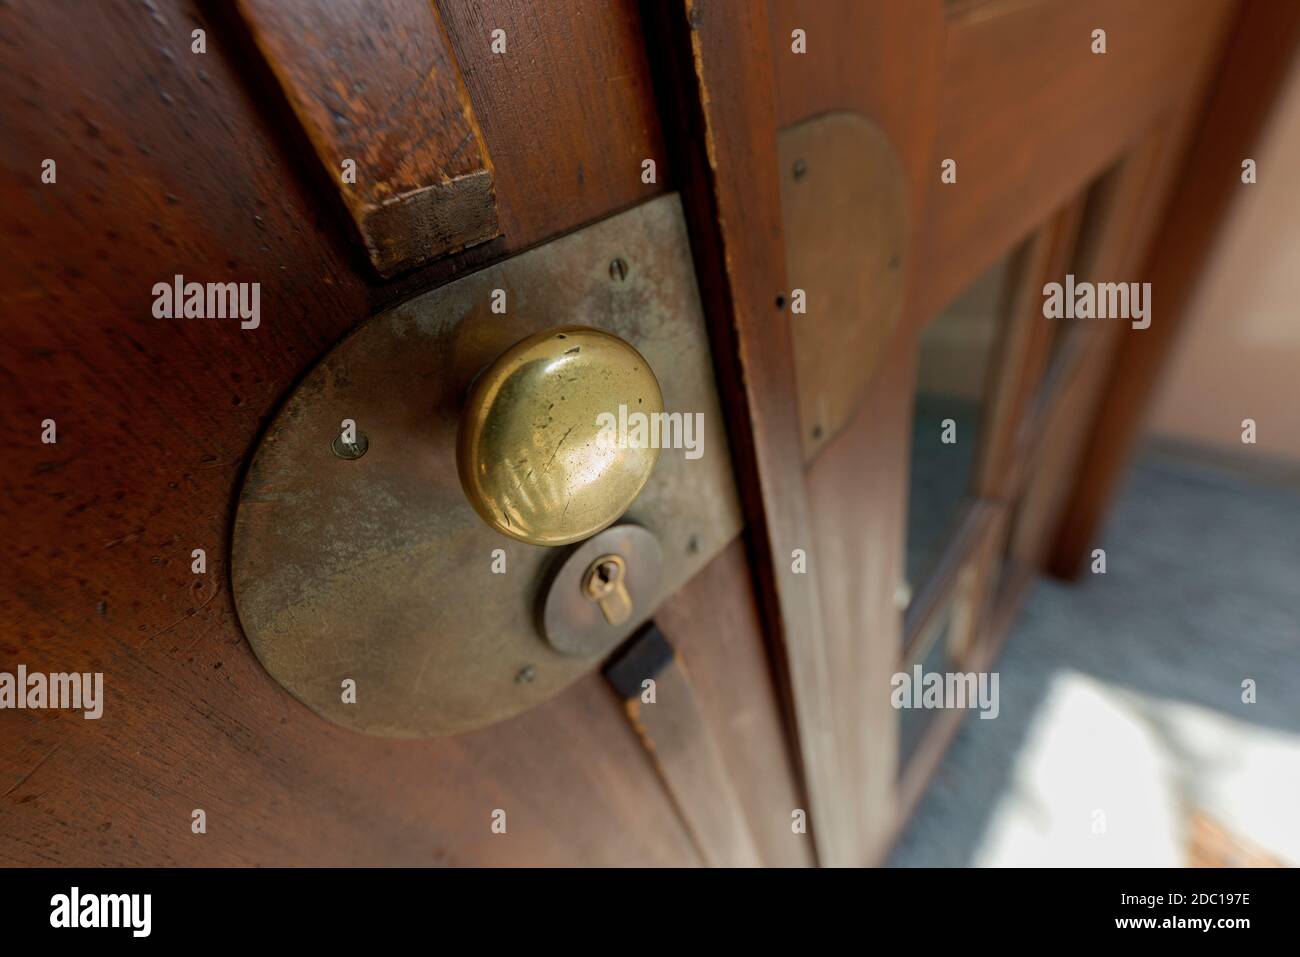 door with doorknob - entrance, Stock Photo